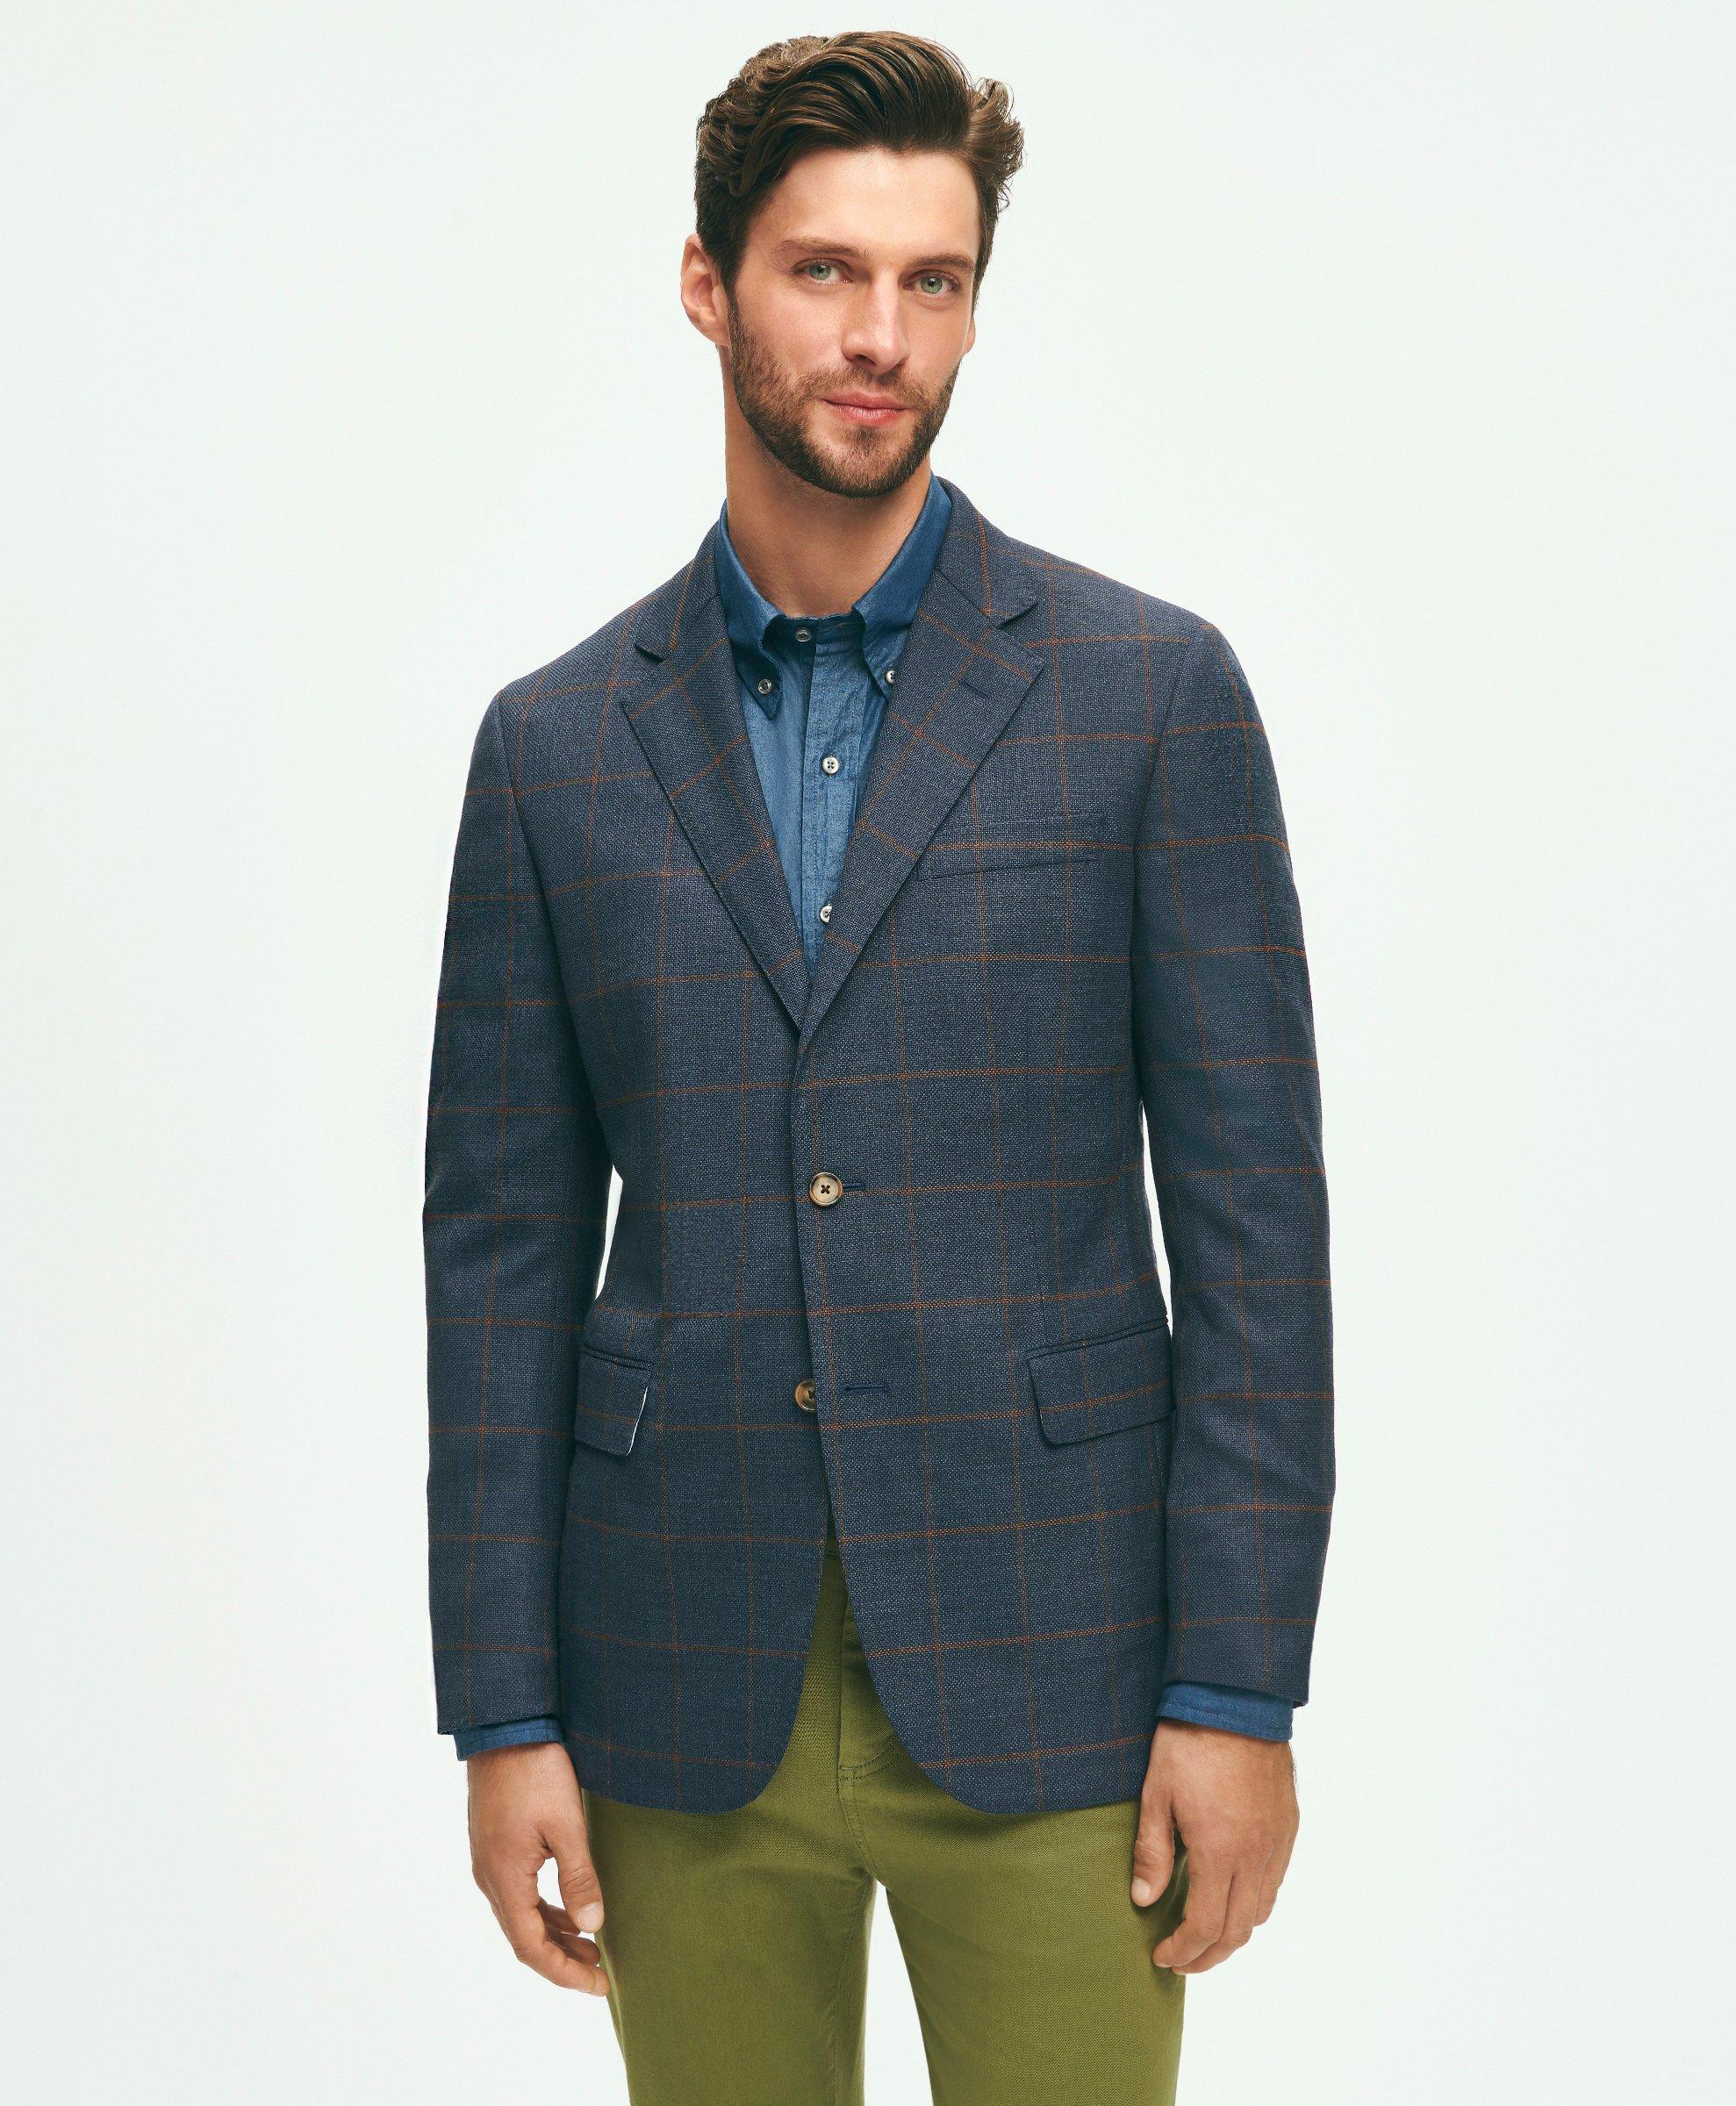 Men's Sport Coats & Blazers